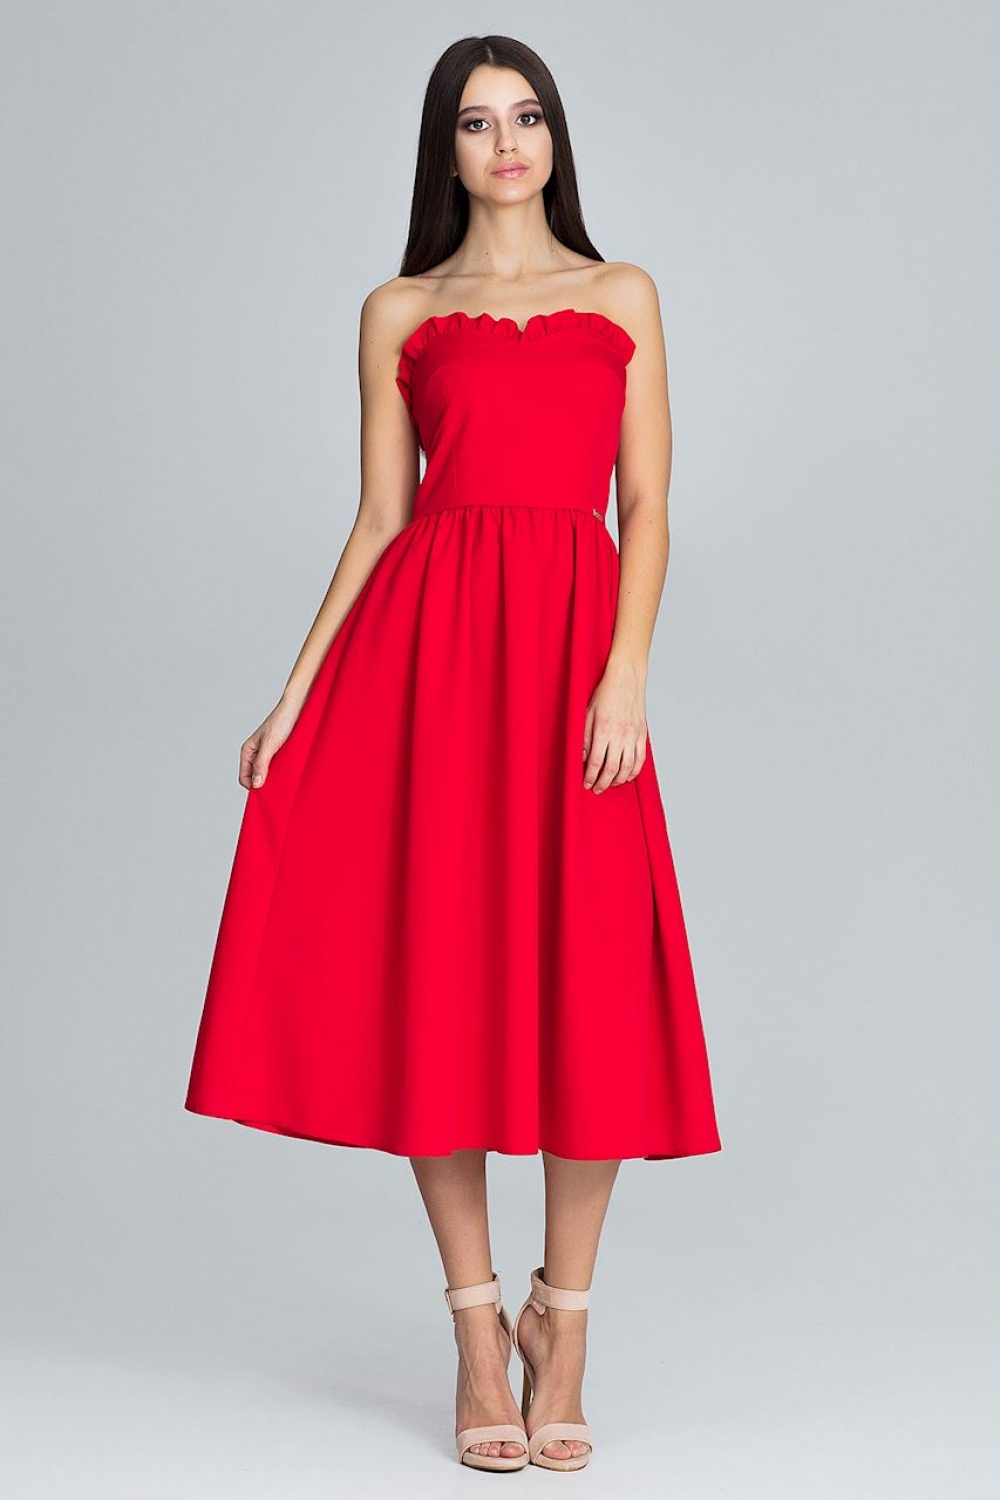 Evening dress model 116340 Figl red Ladies